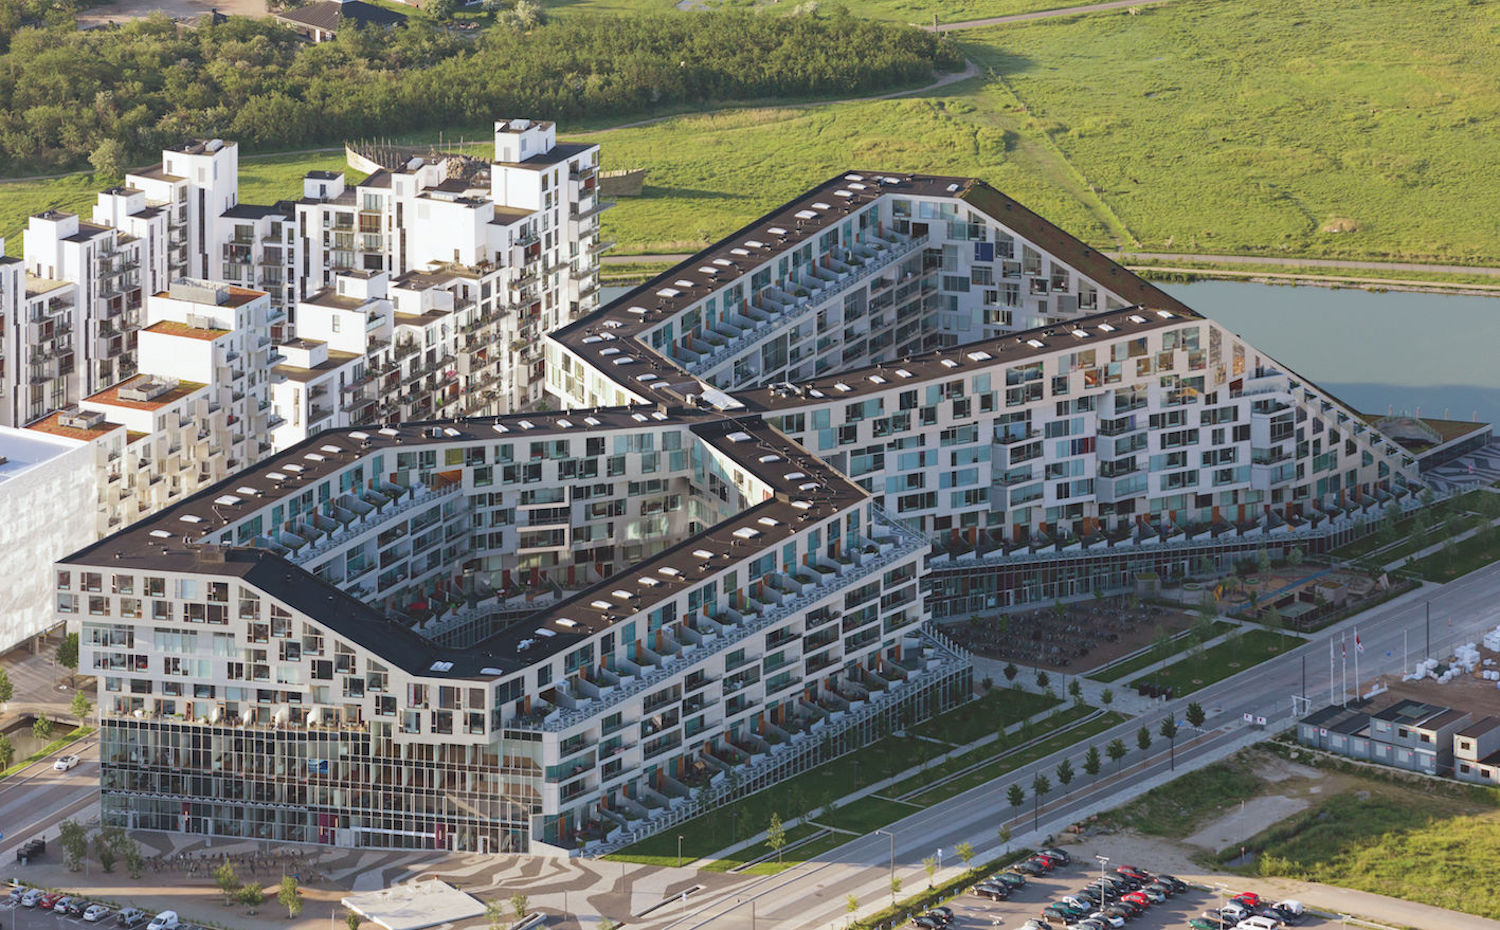 8 House, de Bjarke Ingels Group (BIG) en Copenhagen (Dinamarca) Libro Building Community. New Apartment Architecture de Thames &Hudson